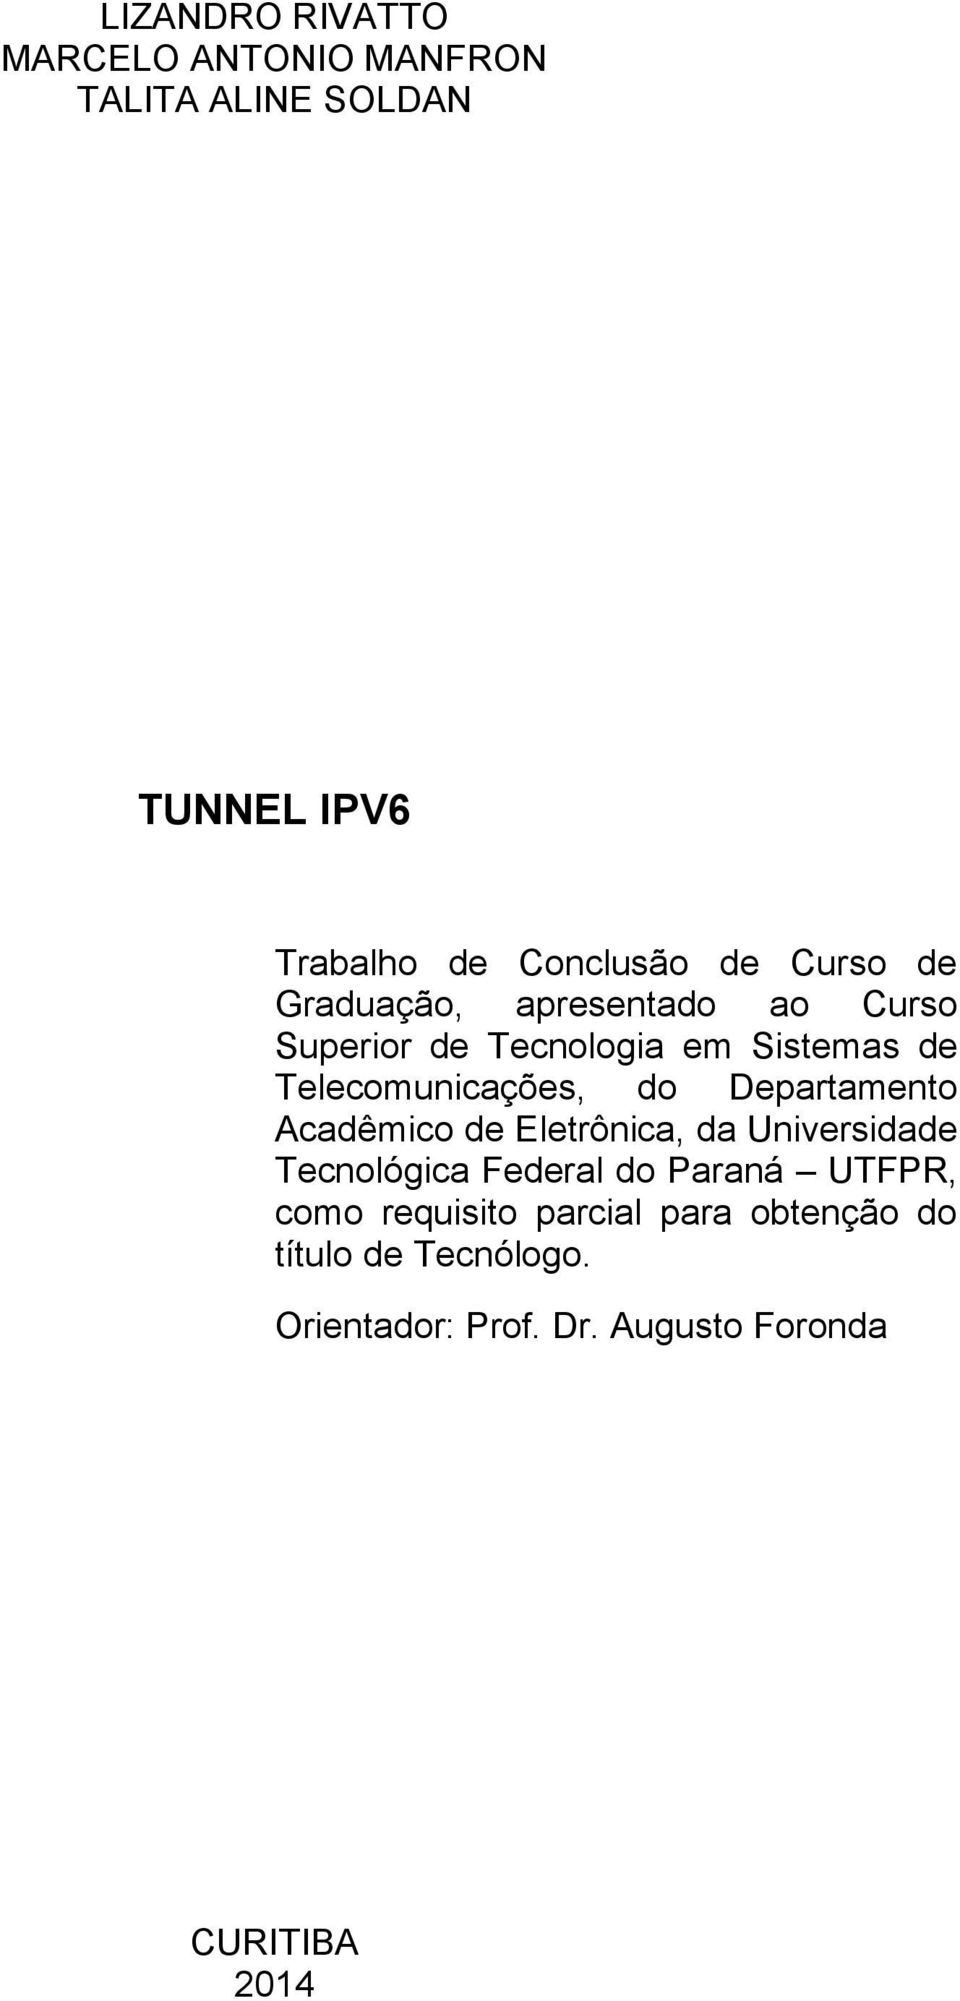 Departamento Acadêmico de Eletrônica, da Universidade Tecnológica Federal do Paraná UTFPR, como